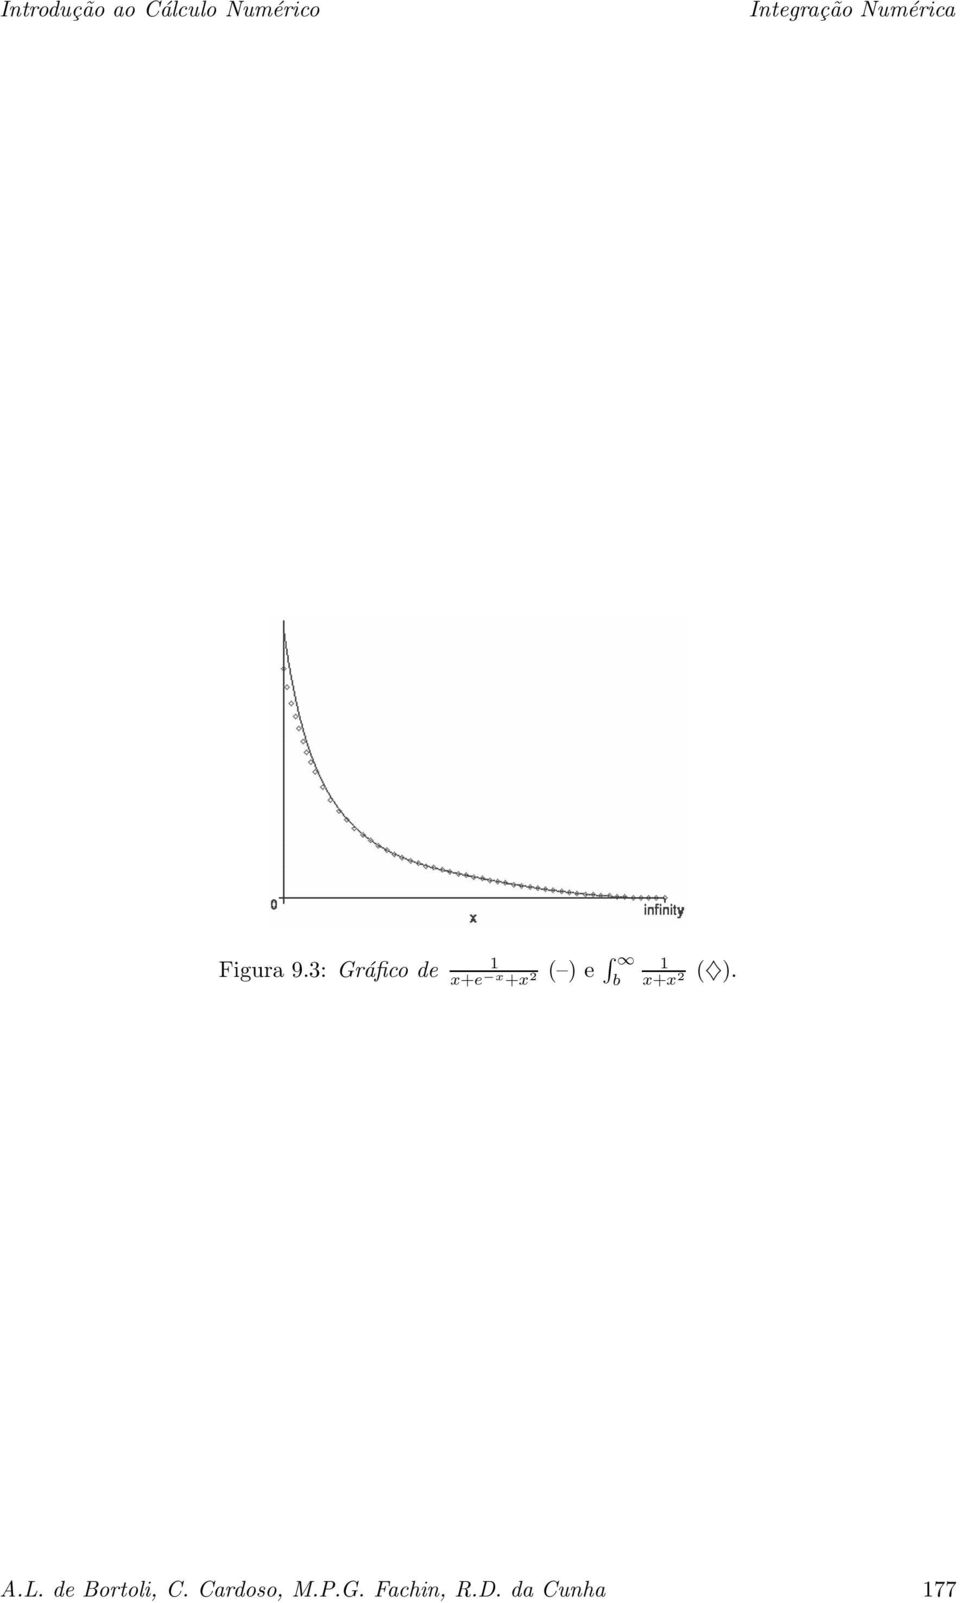 : Gráfico de x+e x +x ( ) e b x+x (